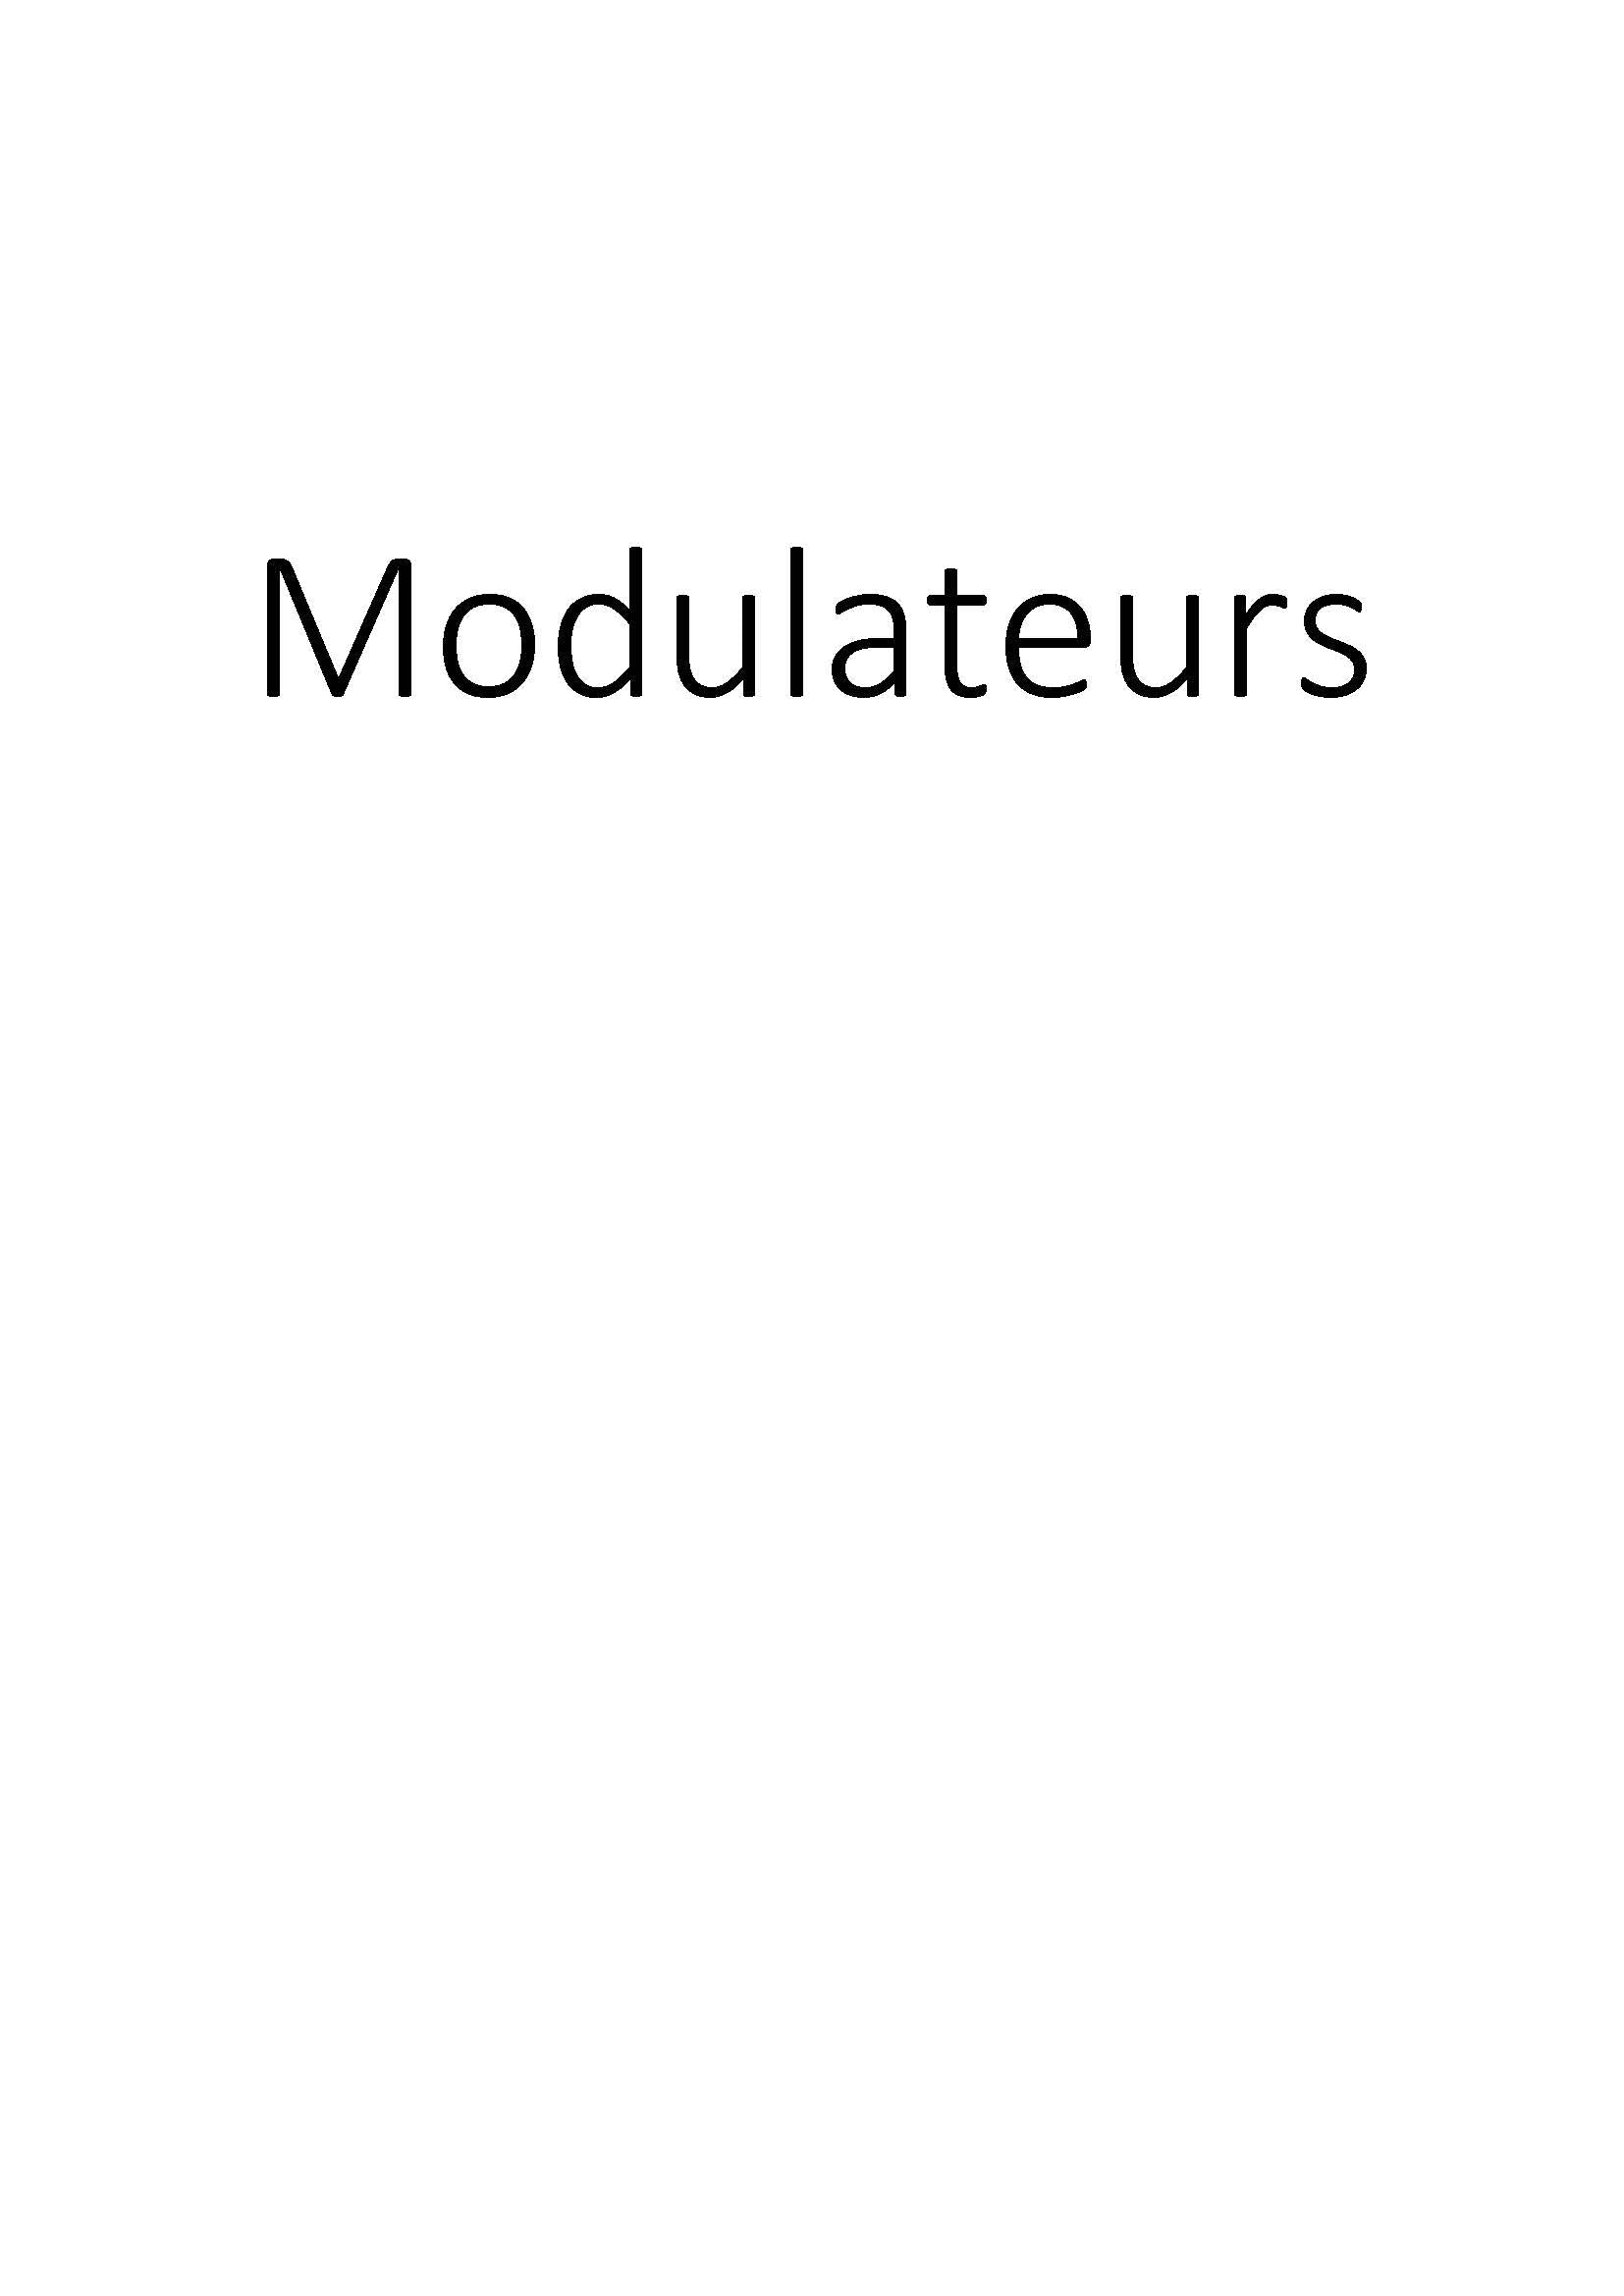 Modulateurs clicktofournisseur.com